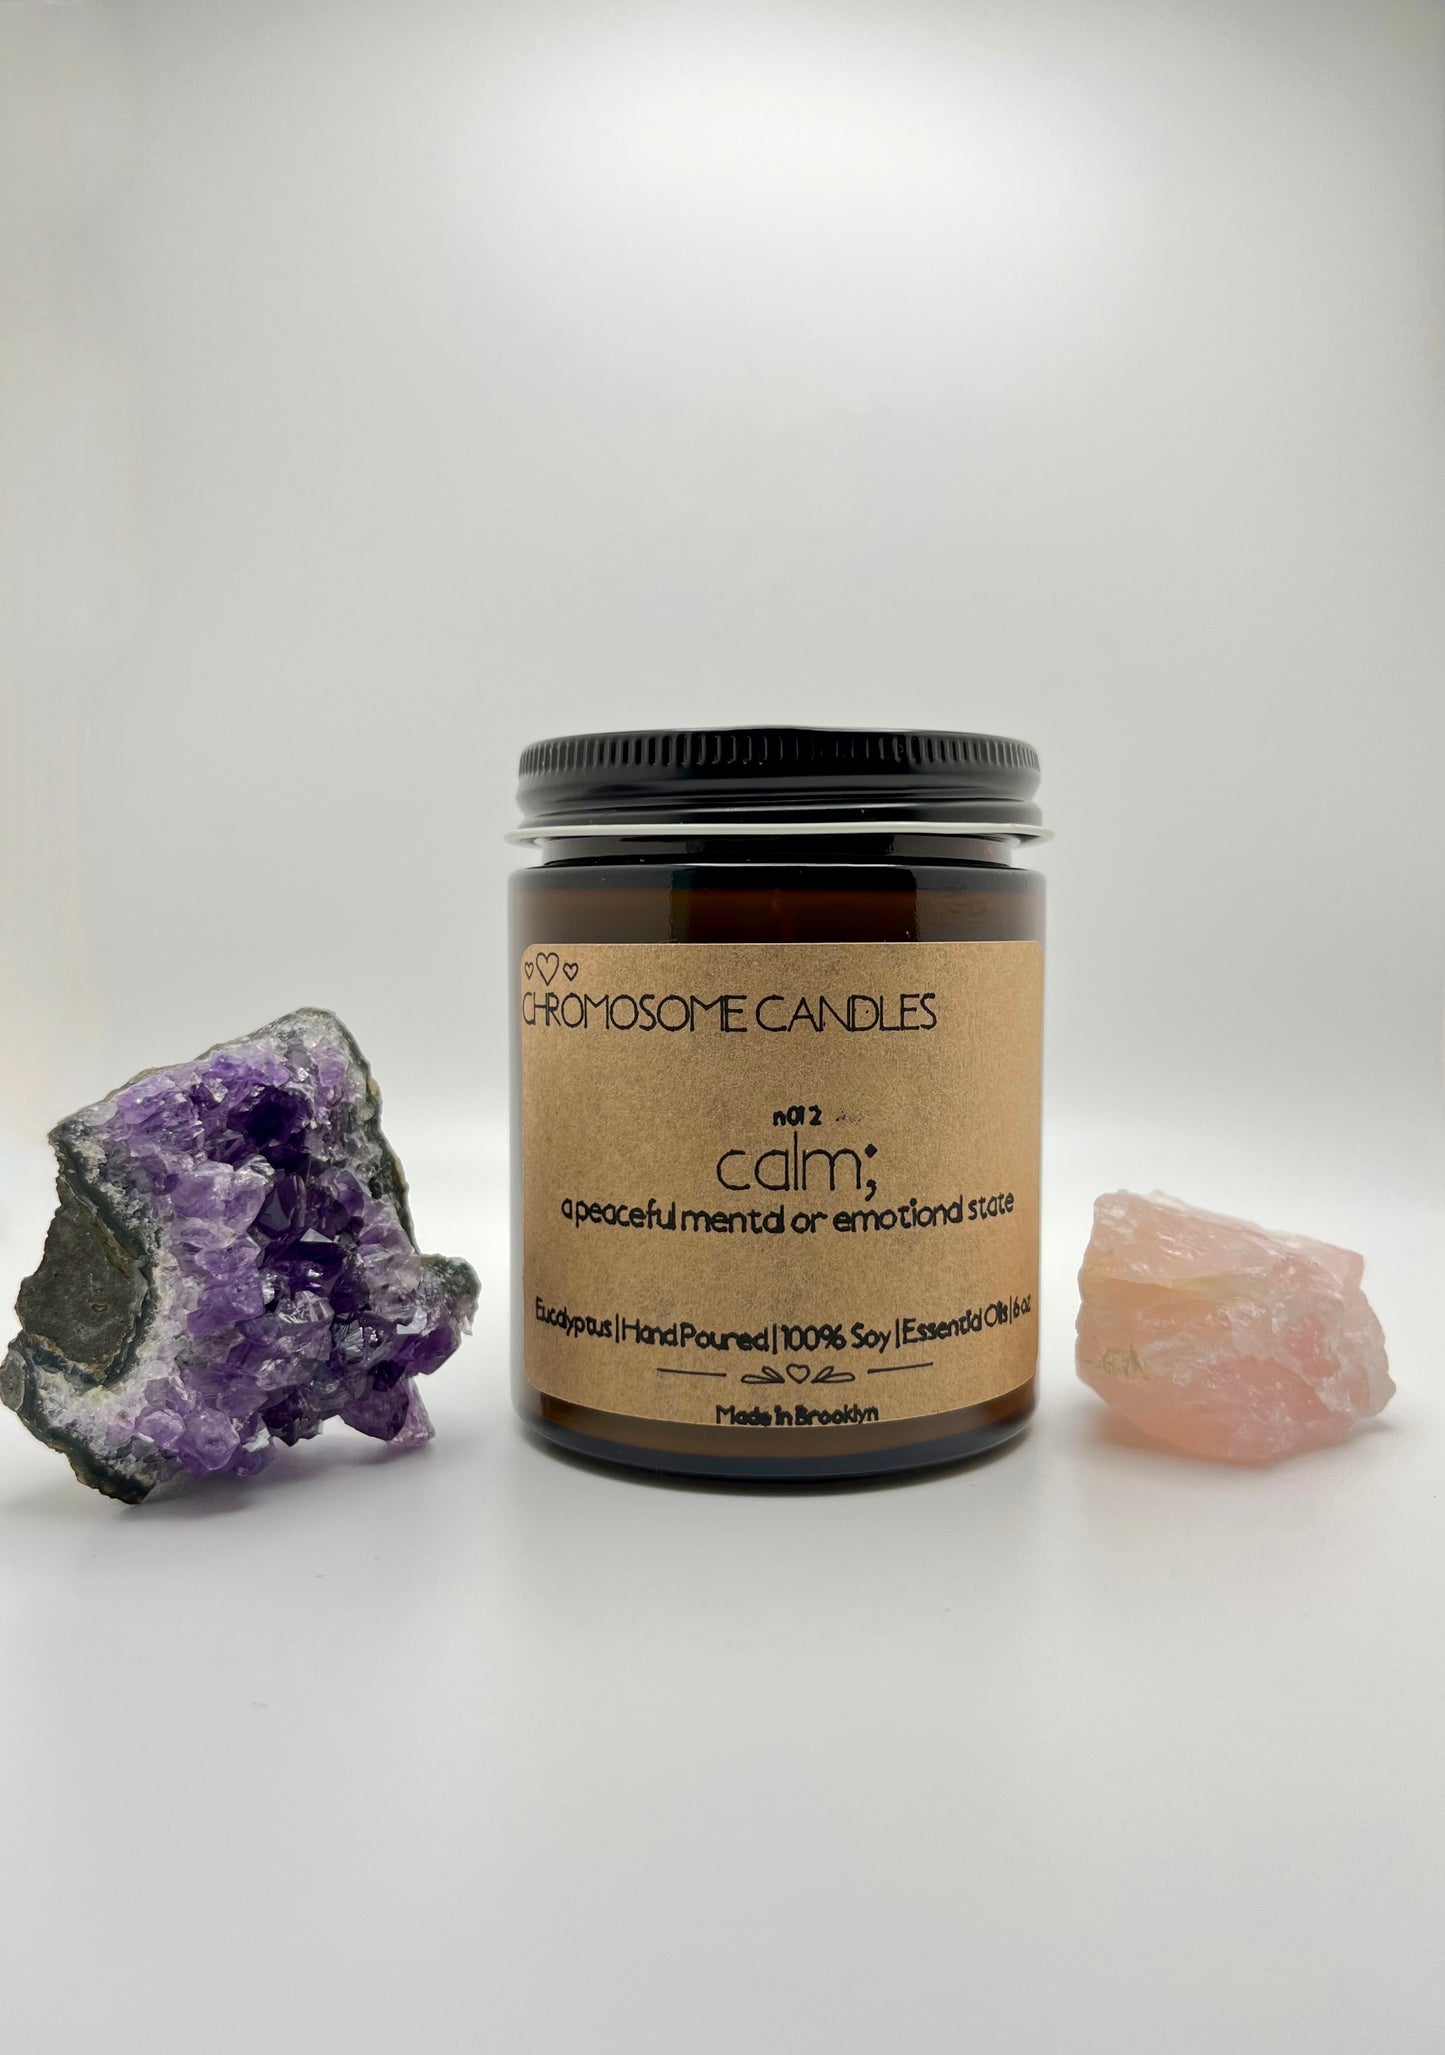 Calm | Eucalyptus Essential Oils Candle | 6 oz | Crackling Wood Wick